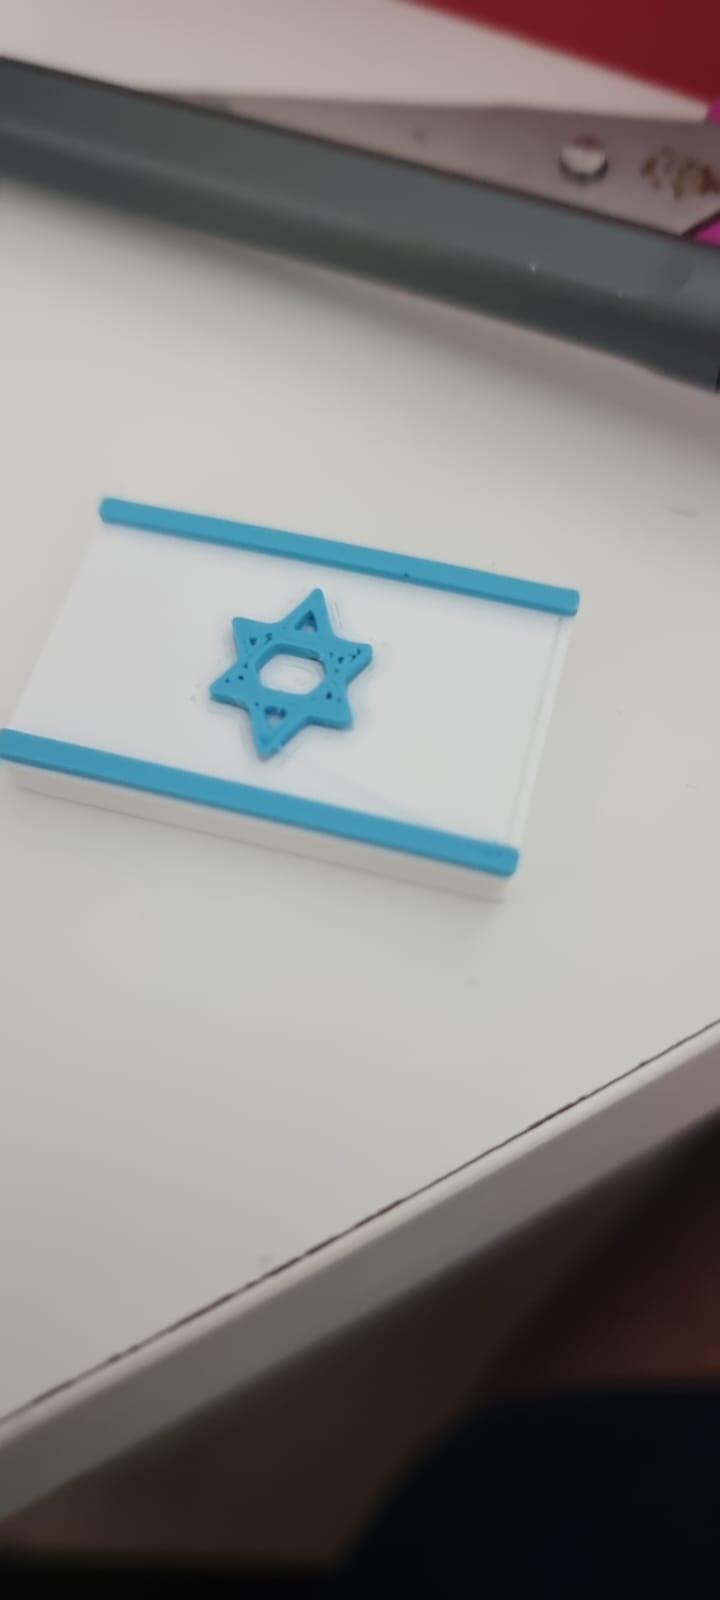 israel flag.stl 3d model